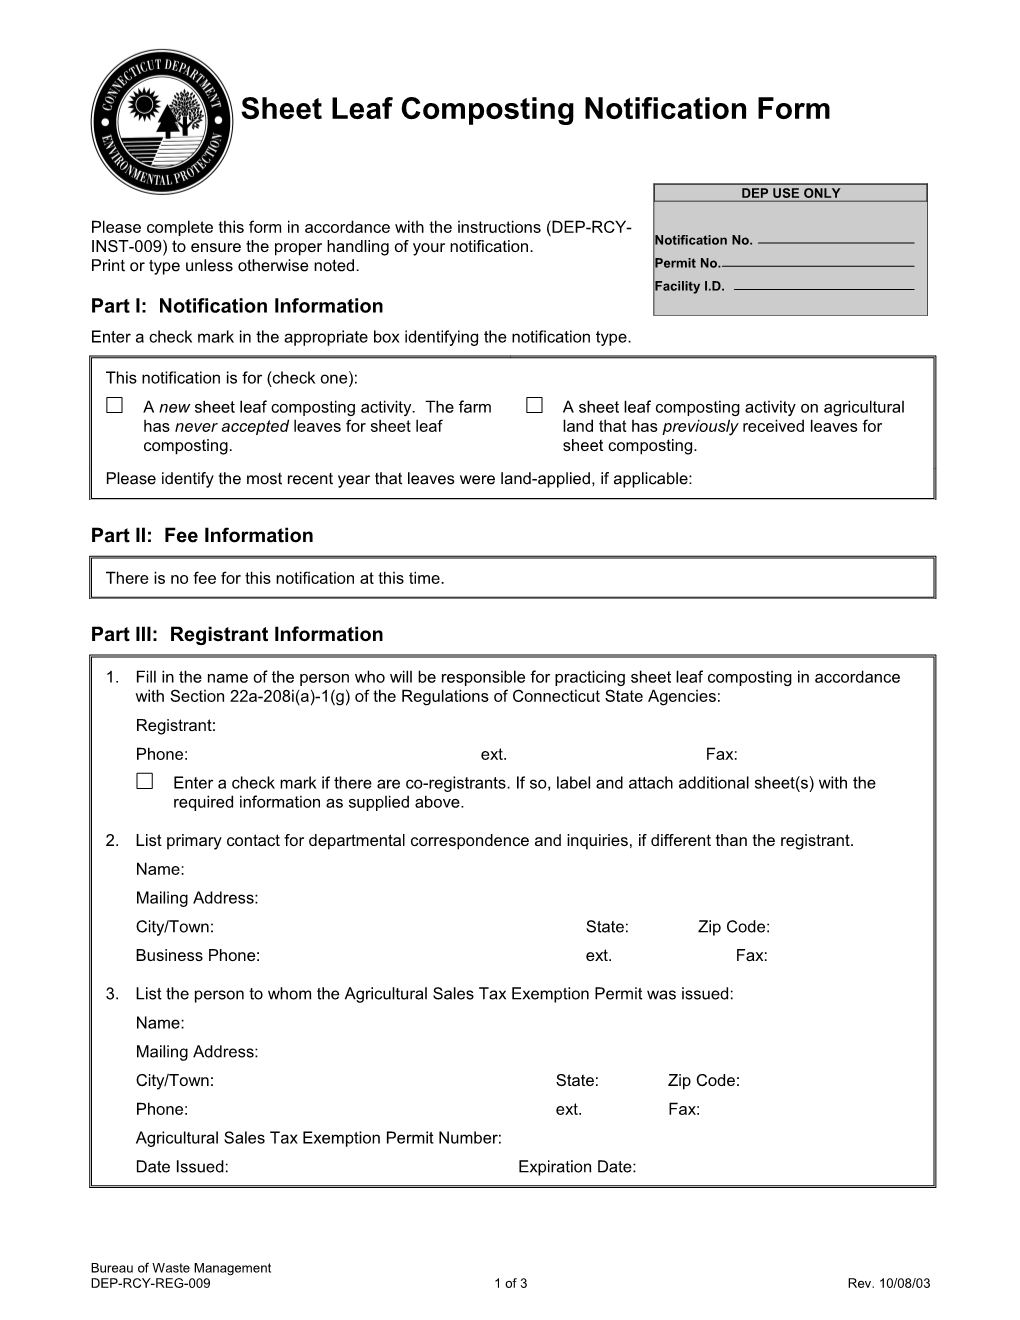 Sheet Leaf Composting Notification Form